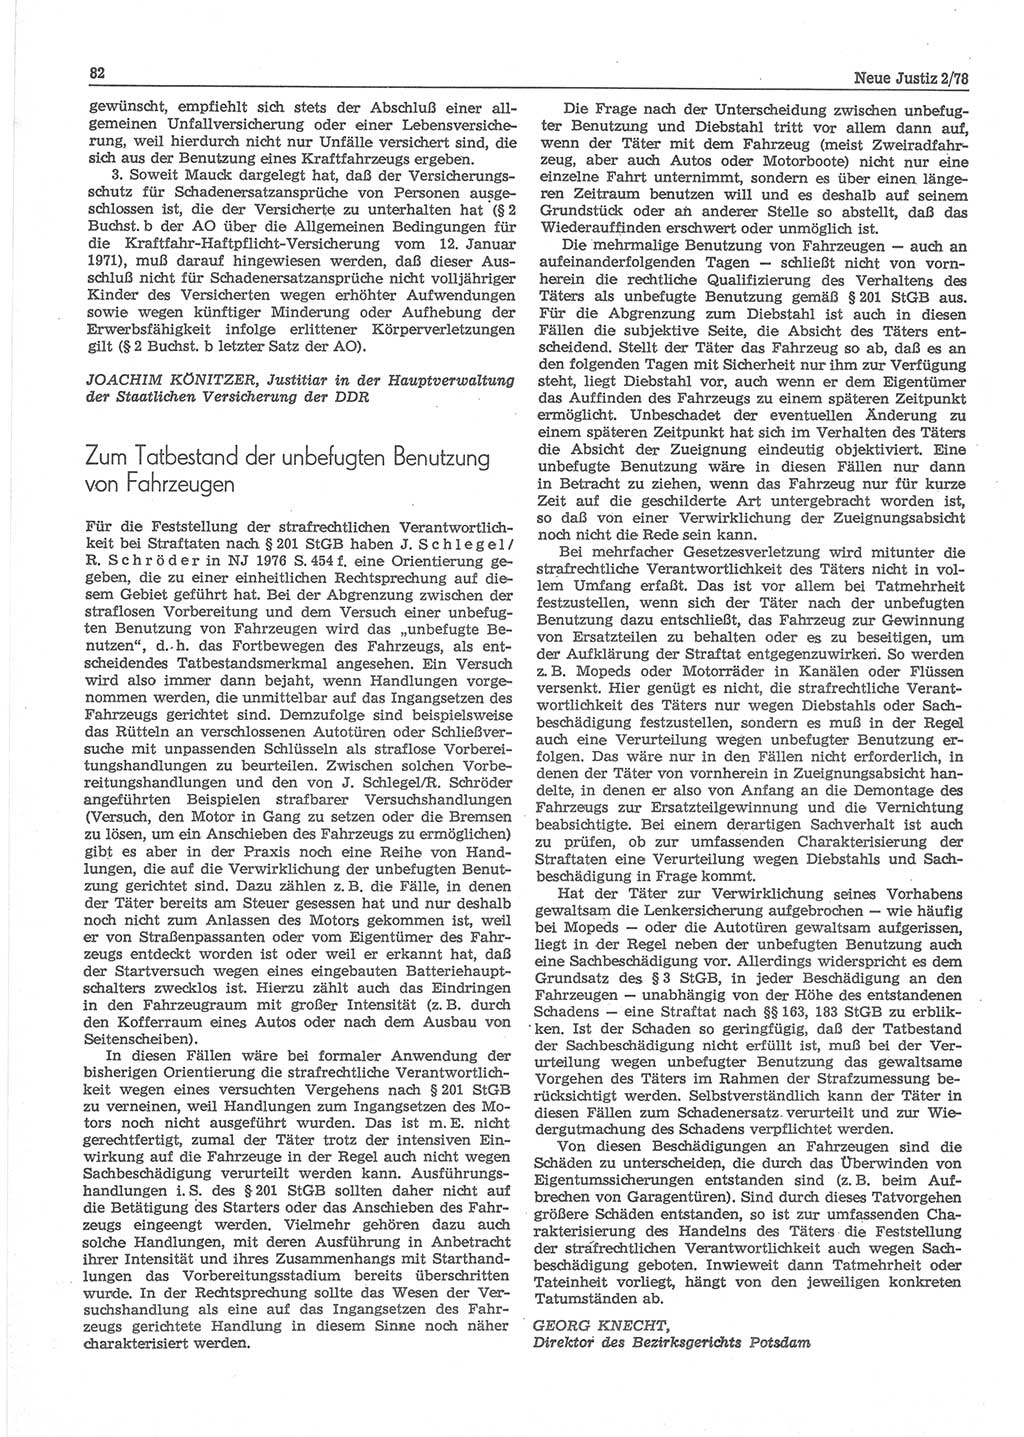 Neue Justiz (NJ), Zeitschrift für sozialistisches Recht und Gesetzlichkeit [Deutsche Demokratische Republik (DDR)], 32. Jahrgang 1978, Seite 82 (NJ DDR 1978, S. 82)